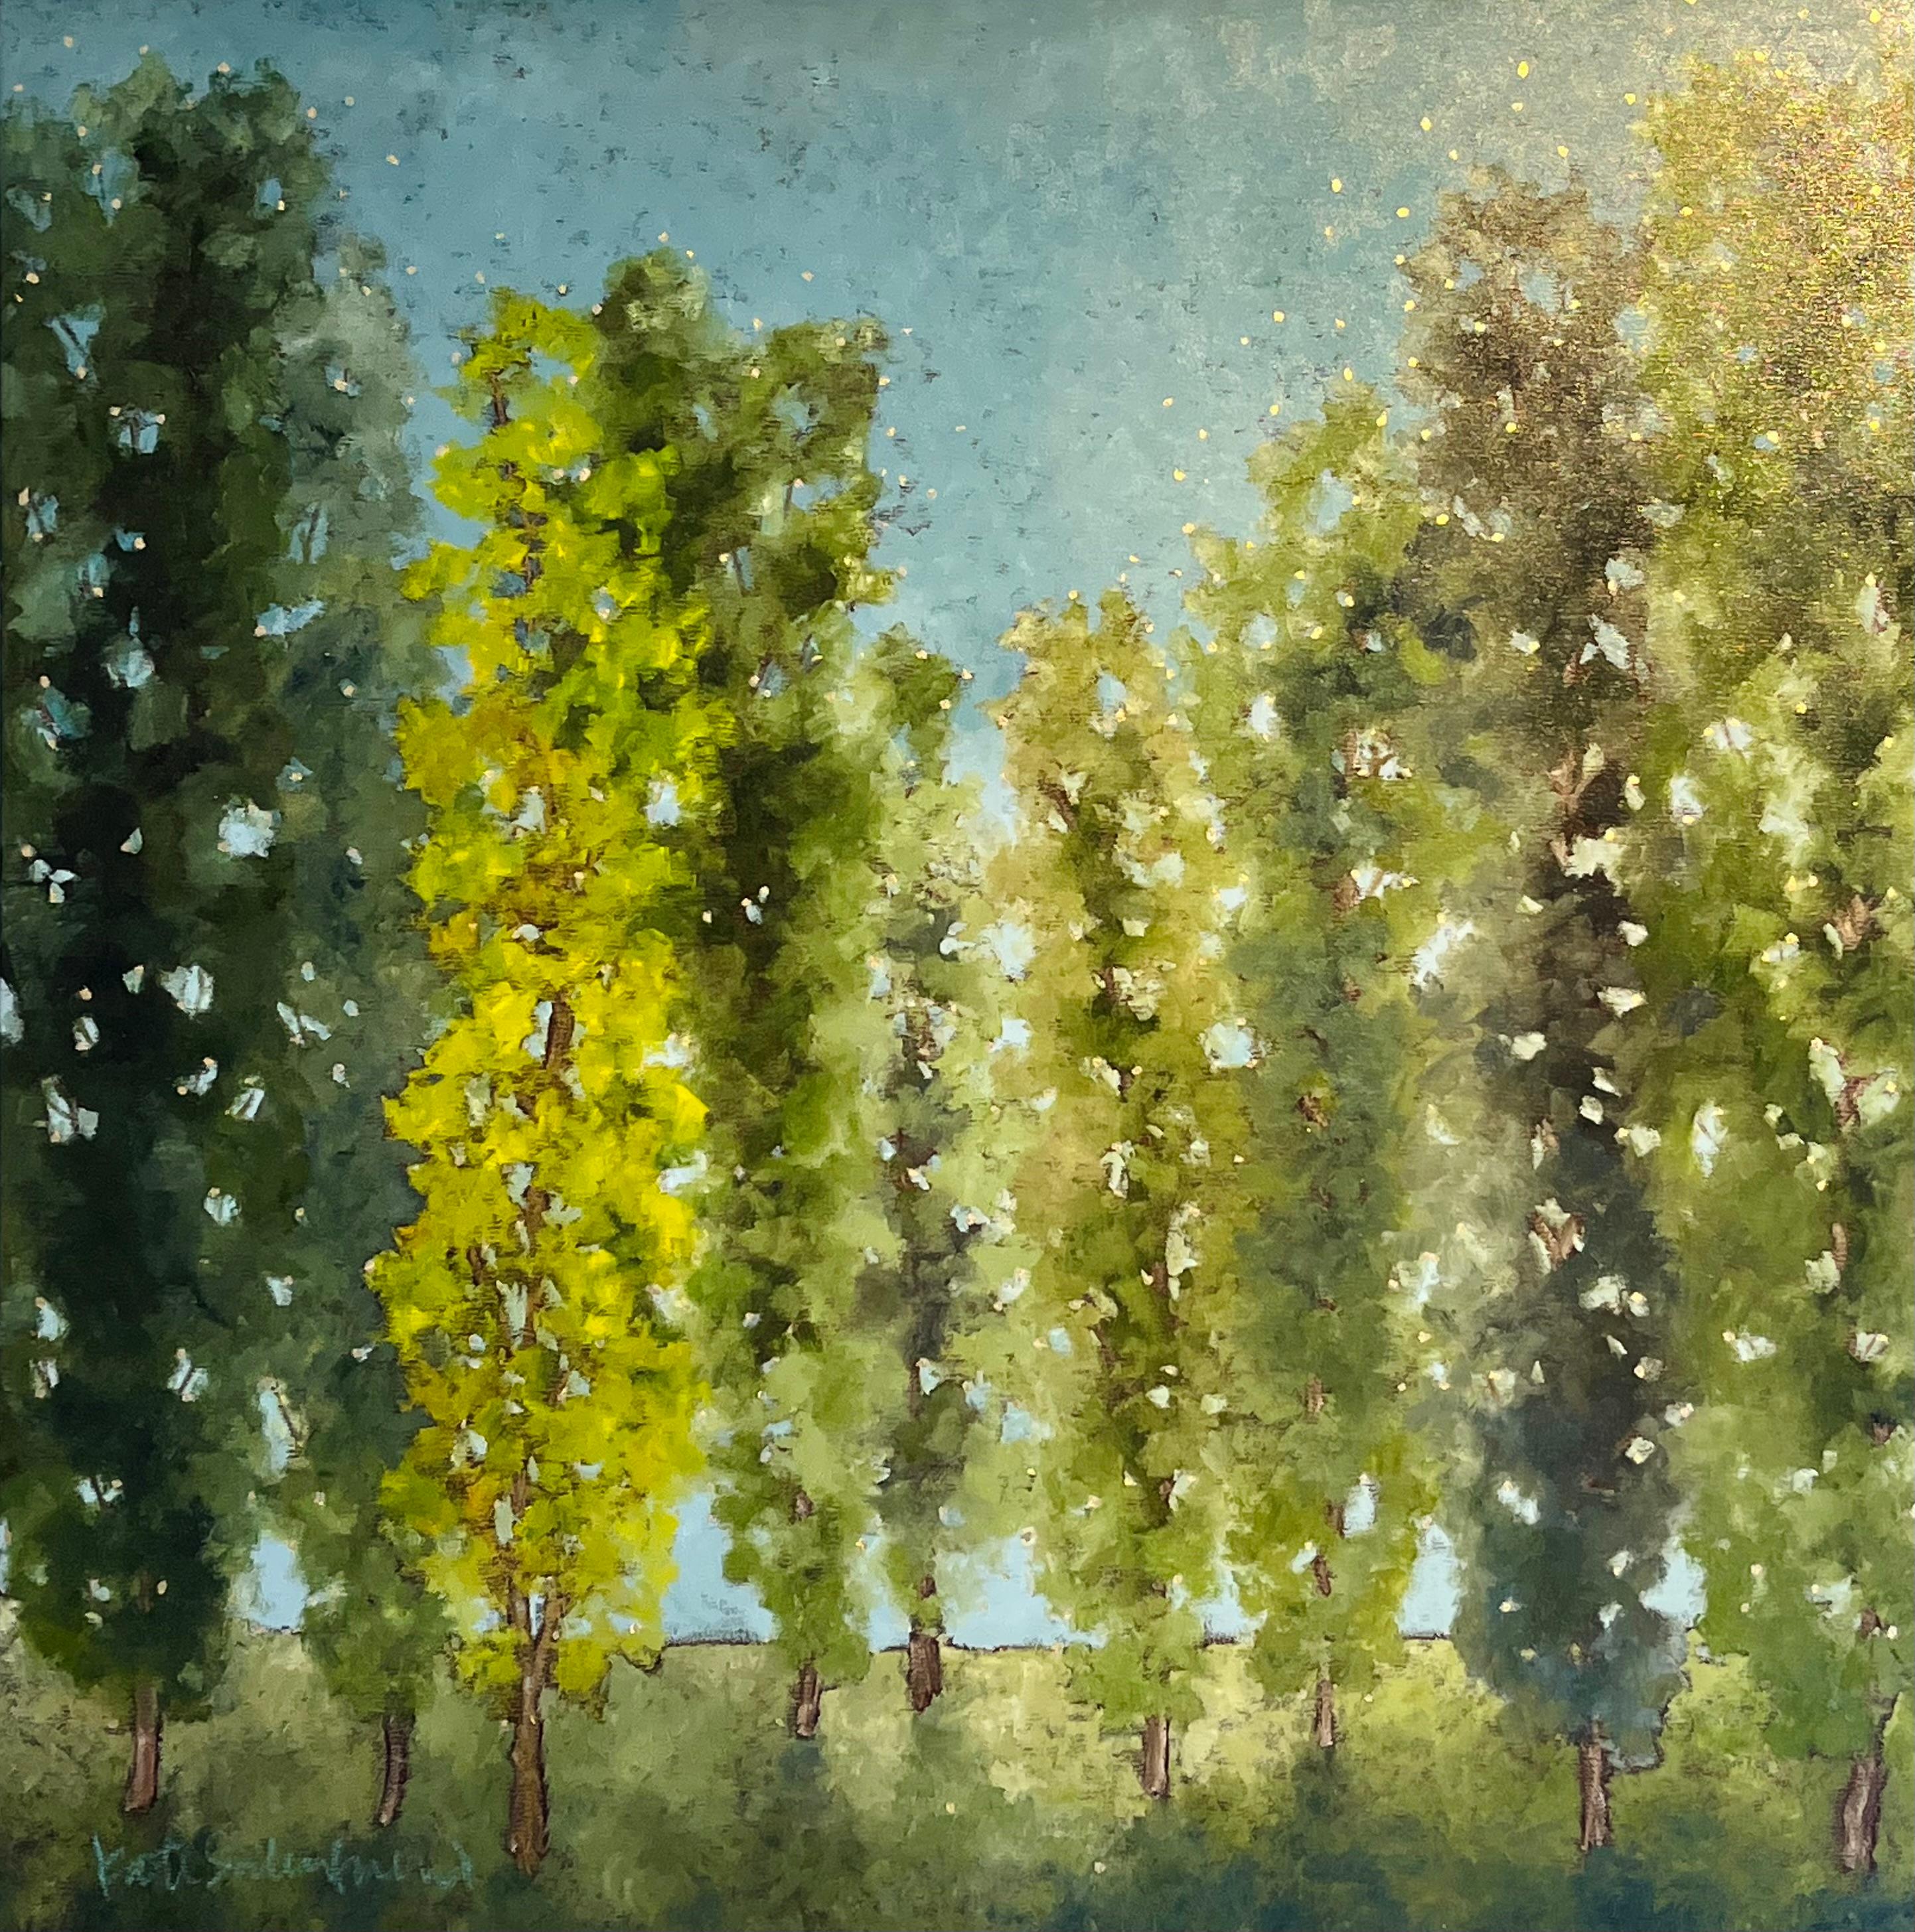 Contemporary Art - peintures à l'huile originales, modernes et abstraites sur les arbres et les paysages. - Réalisme Painting par Kate Salenfriend